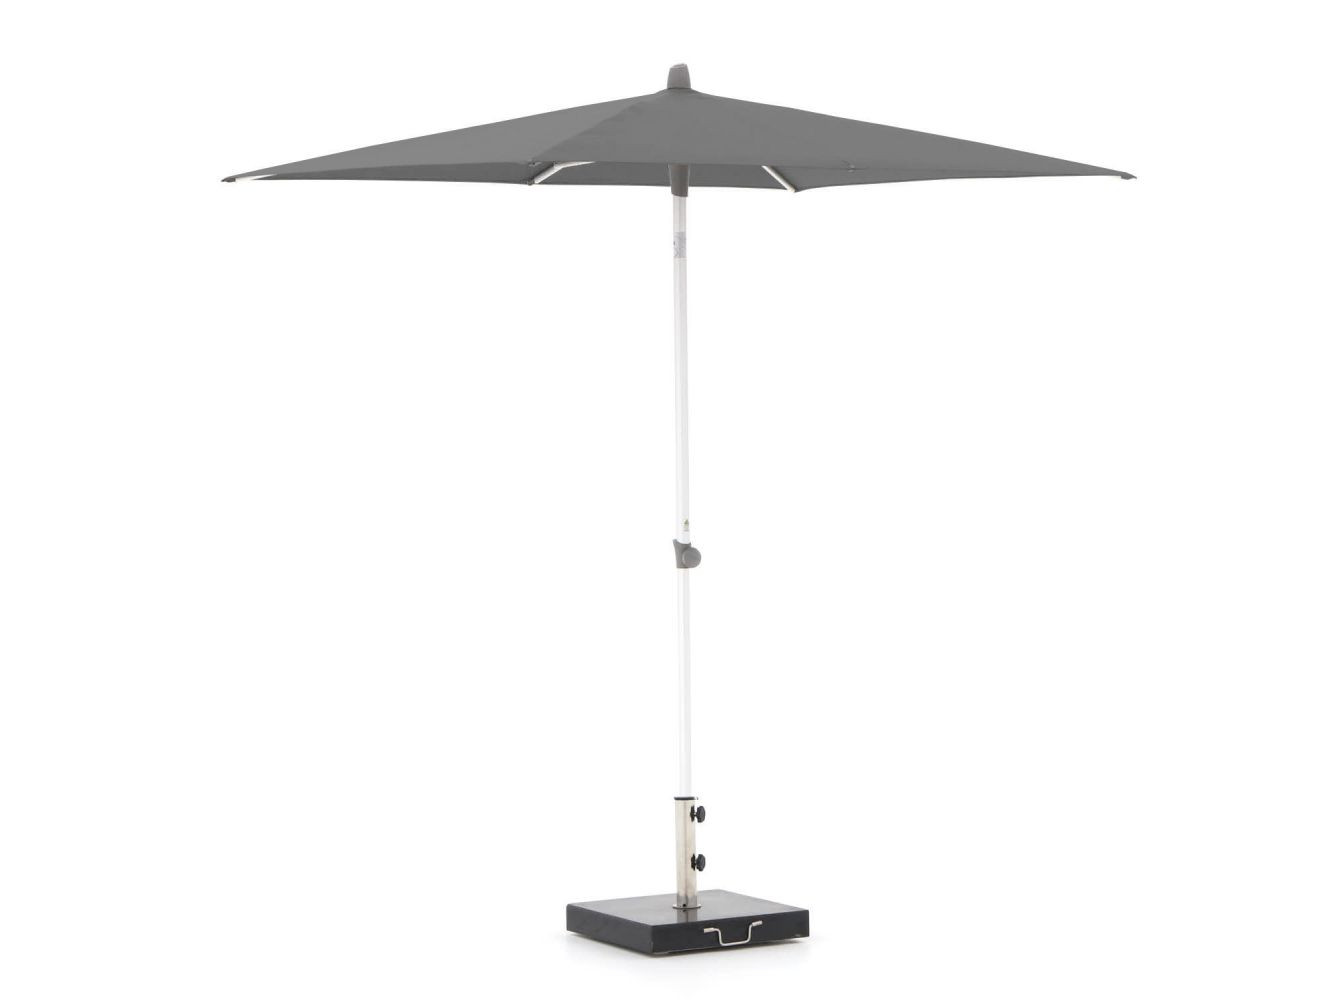 Glatz Alu-Smart parasol 210x150cm - Laagste prijsgarantie!